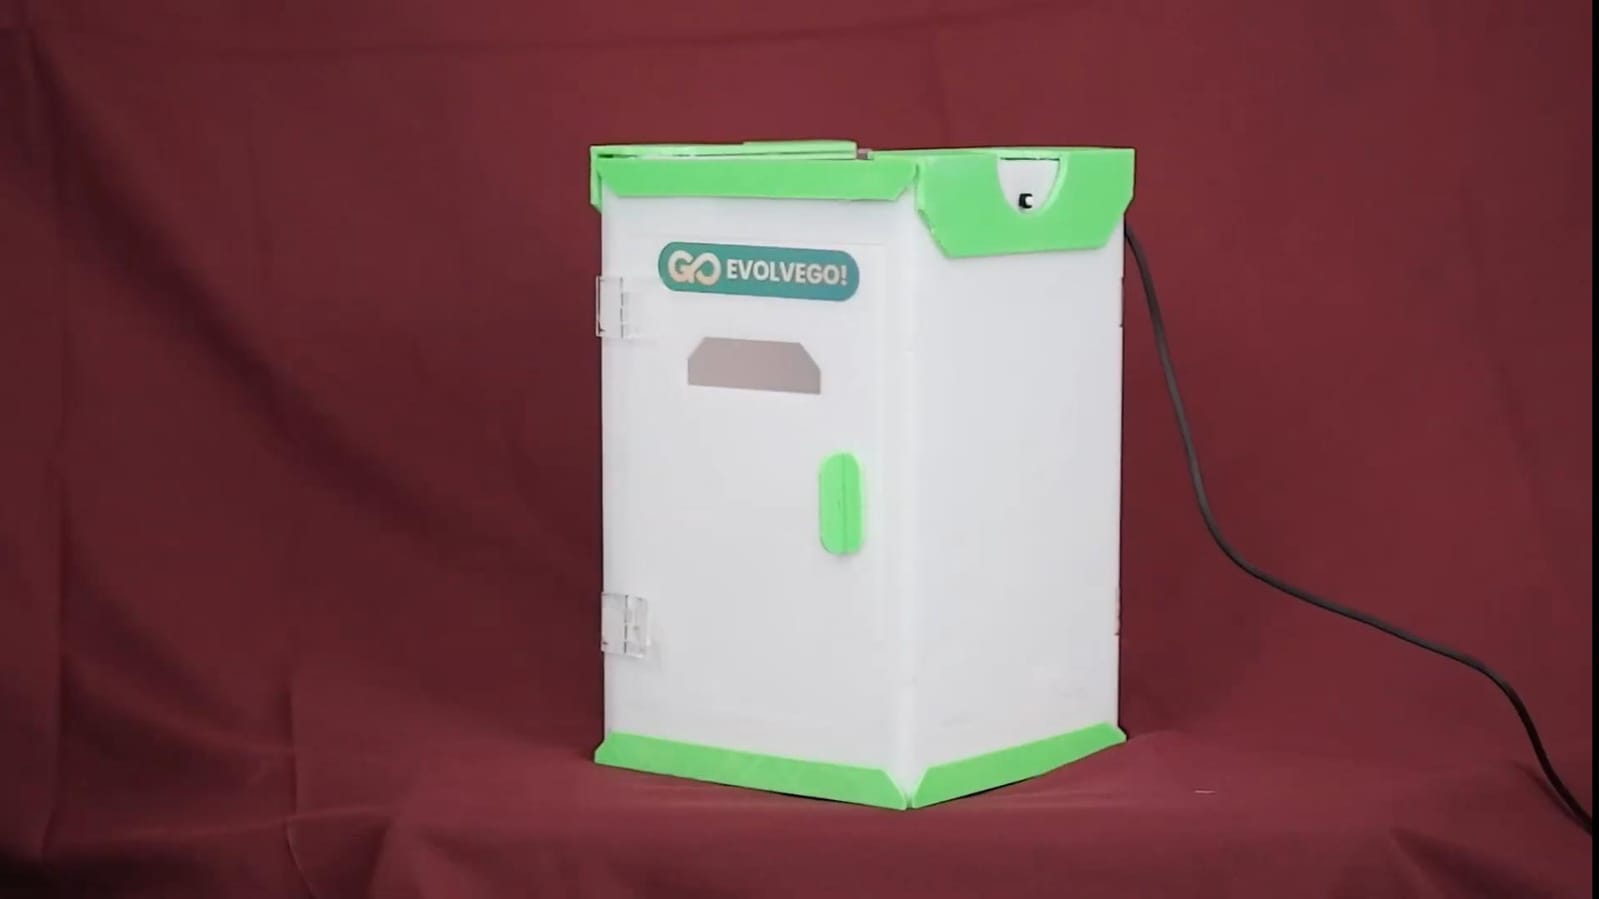 Tampilan alat pendeteksi volume minyak jelantah untuk proses pengecekan pada fitur WasteGo